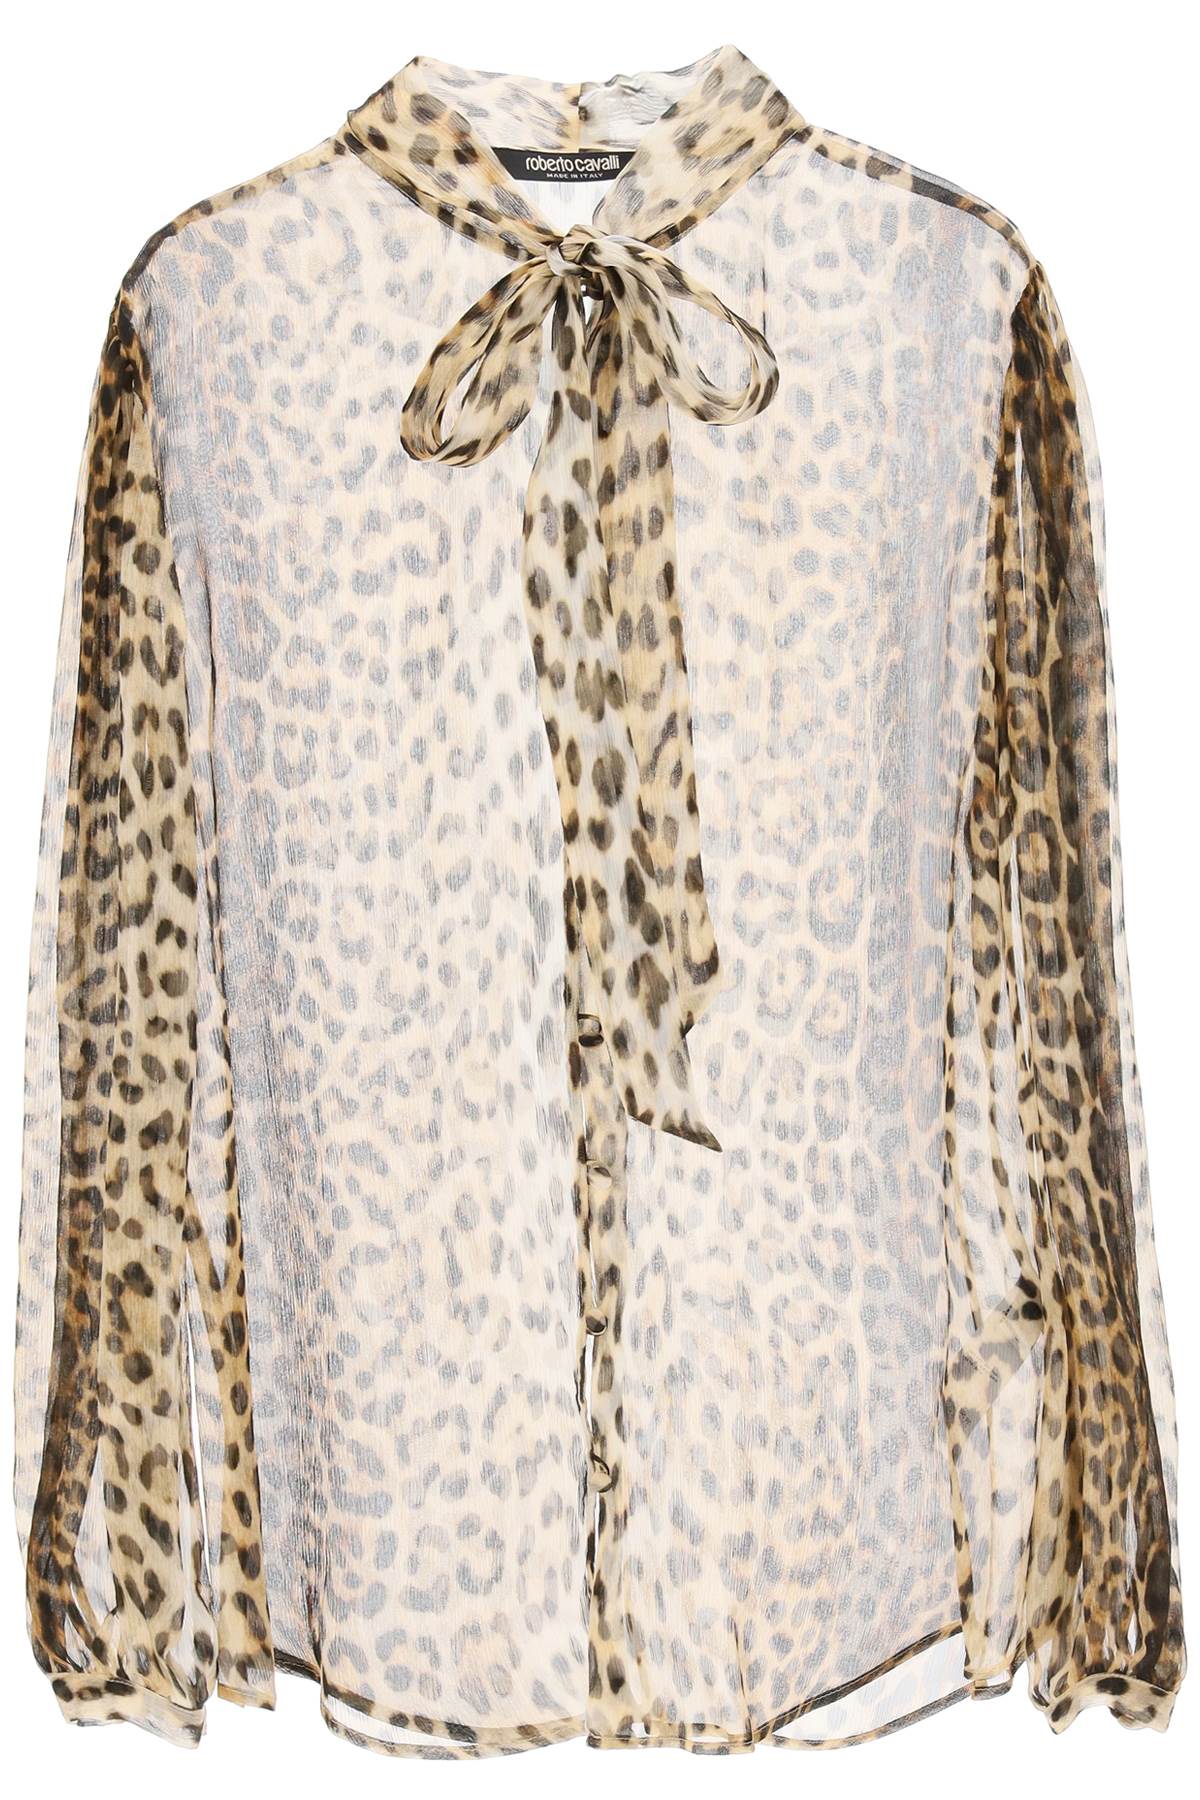 roberto cavalli-camicia in seta con stampa leopard-donna